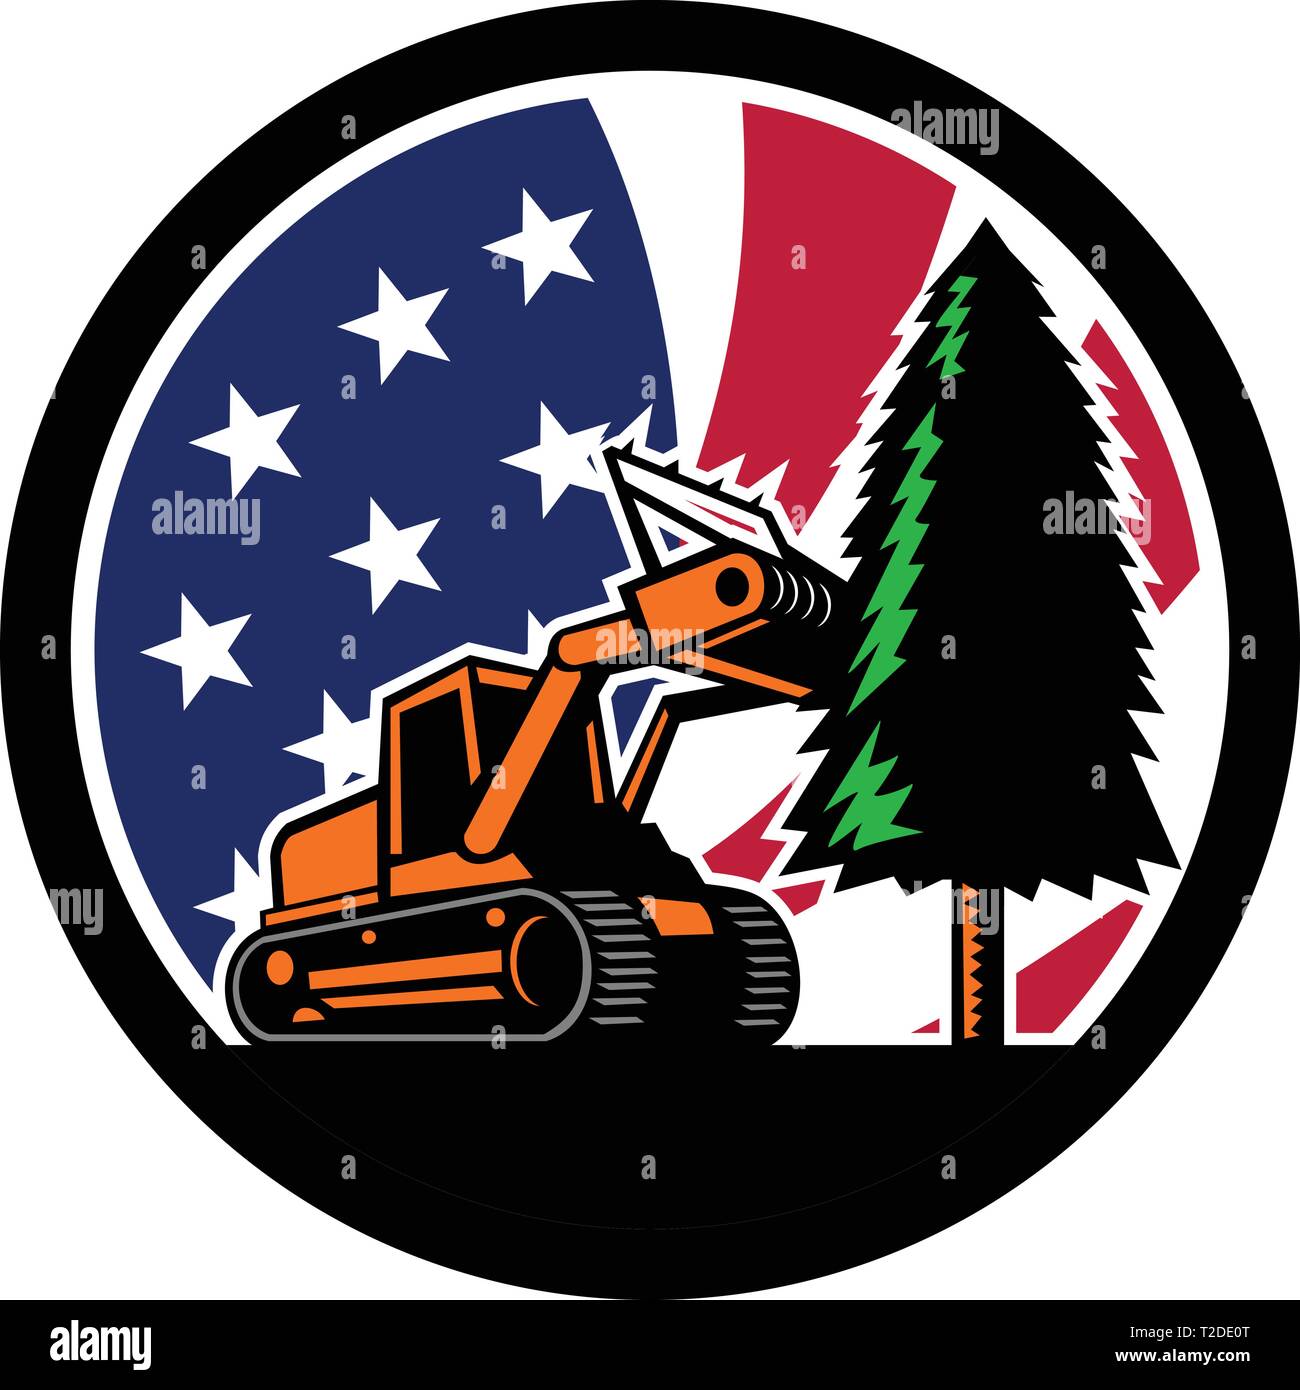 Retro style illustration d'un tracteur à chenilles ou des forêts de paillage broyeur abattre arbre avec American stars and stripes USA flag à l'intérieur du cercle l Illustration de Vecteur